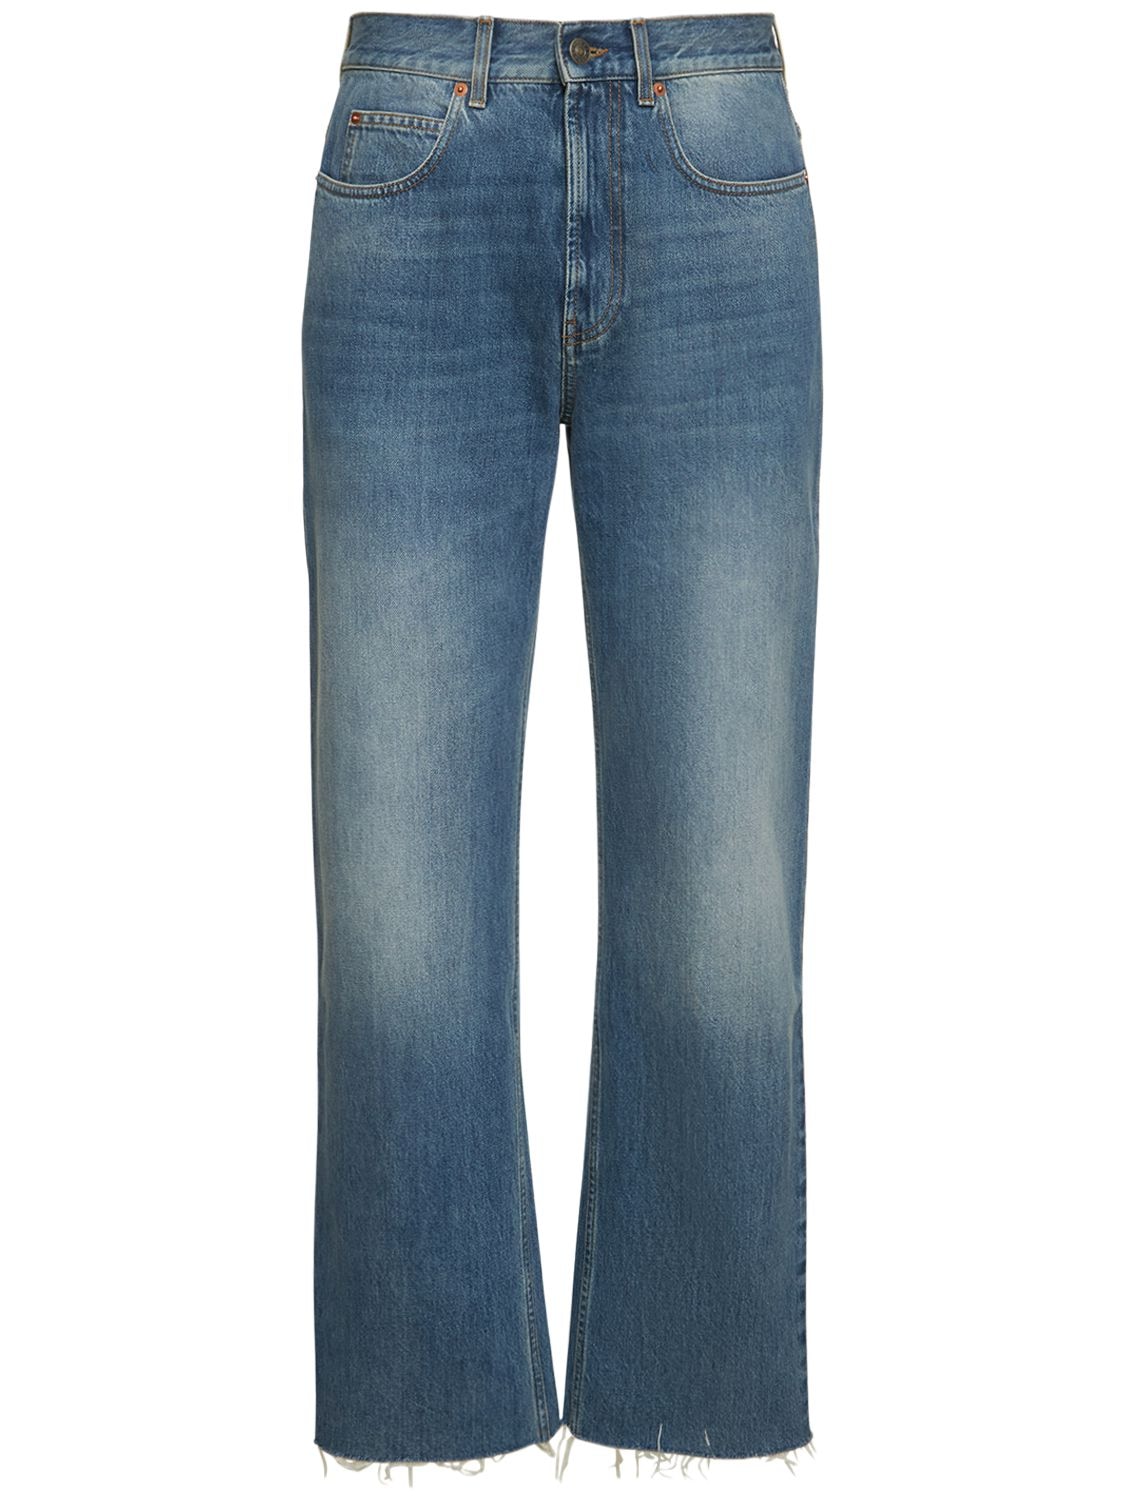 Cotton Denim Jeans W/ Raw Cut Hem